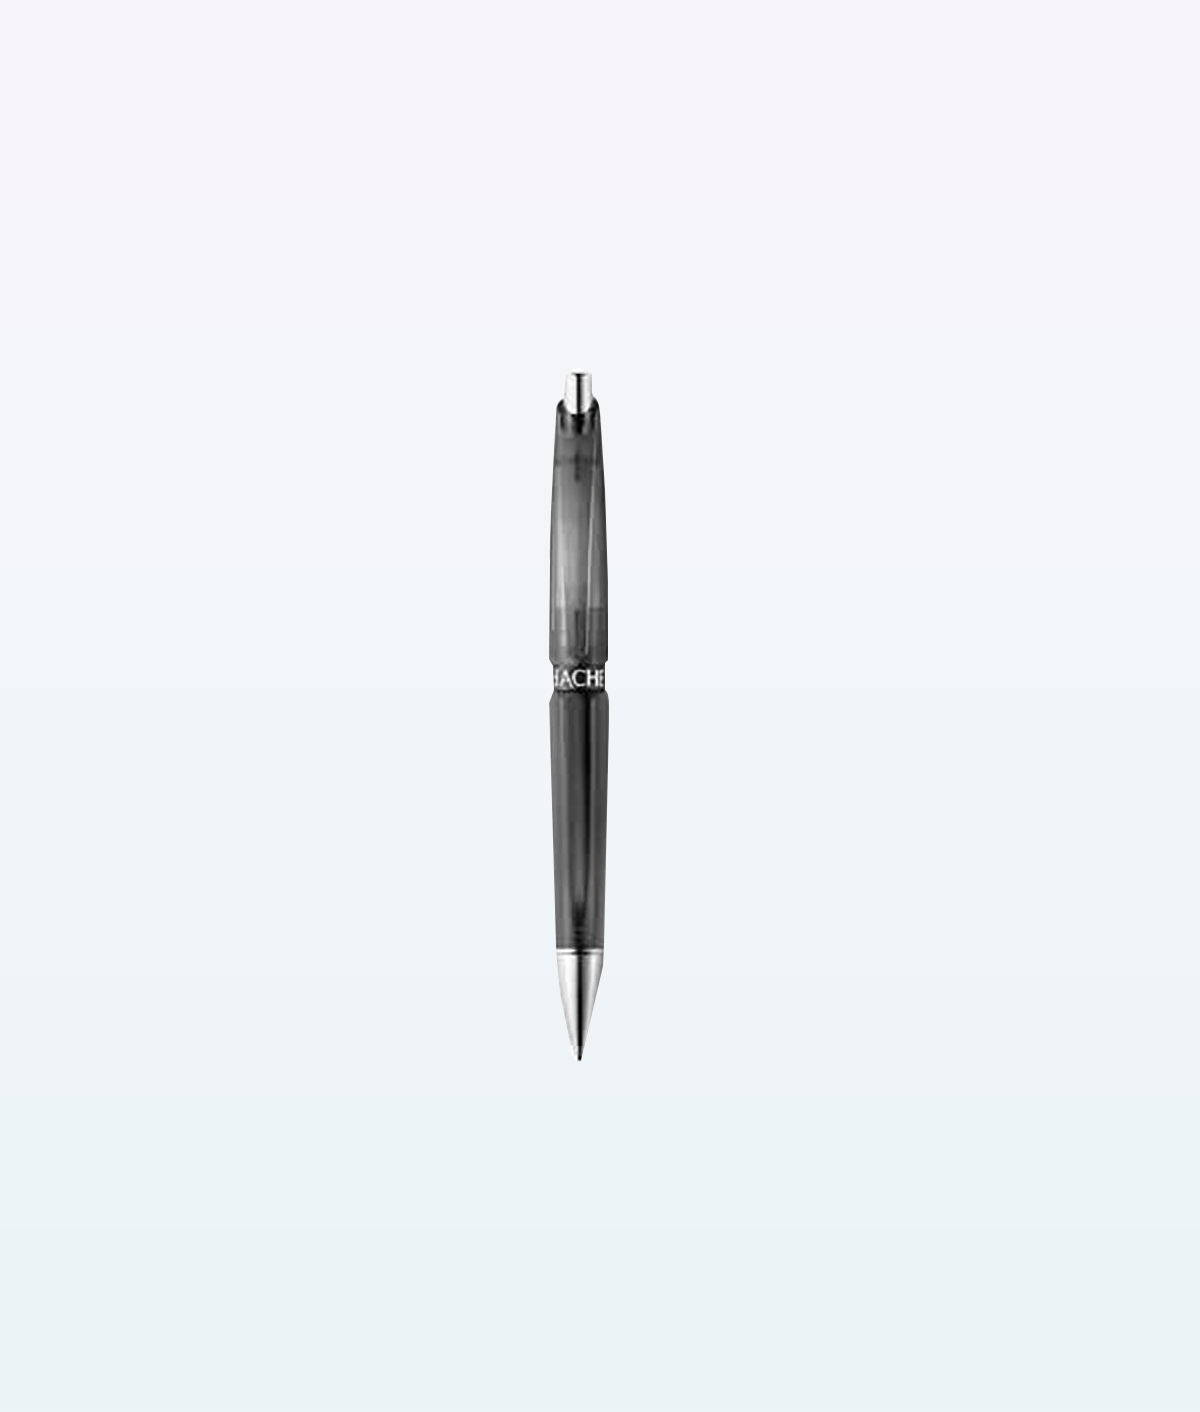 Caran dAche Stylo Factory Collection – Ballpoint Pen Refillable Medium-Blue Cartridge